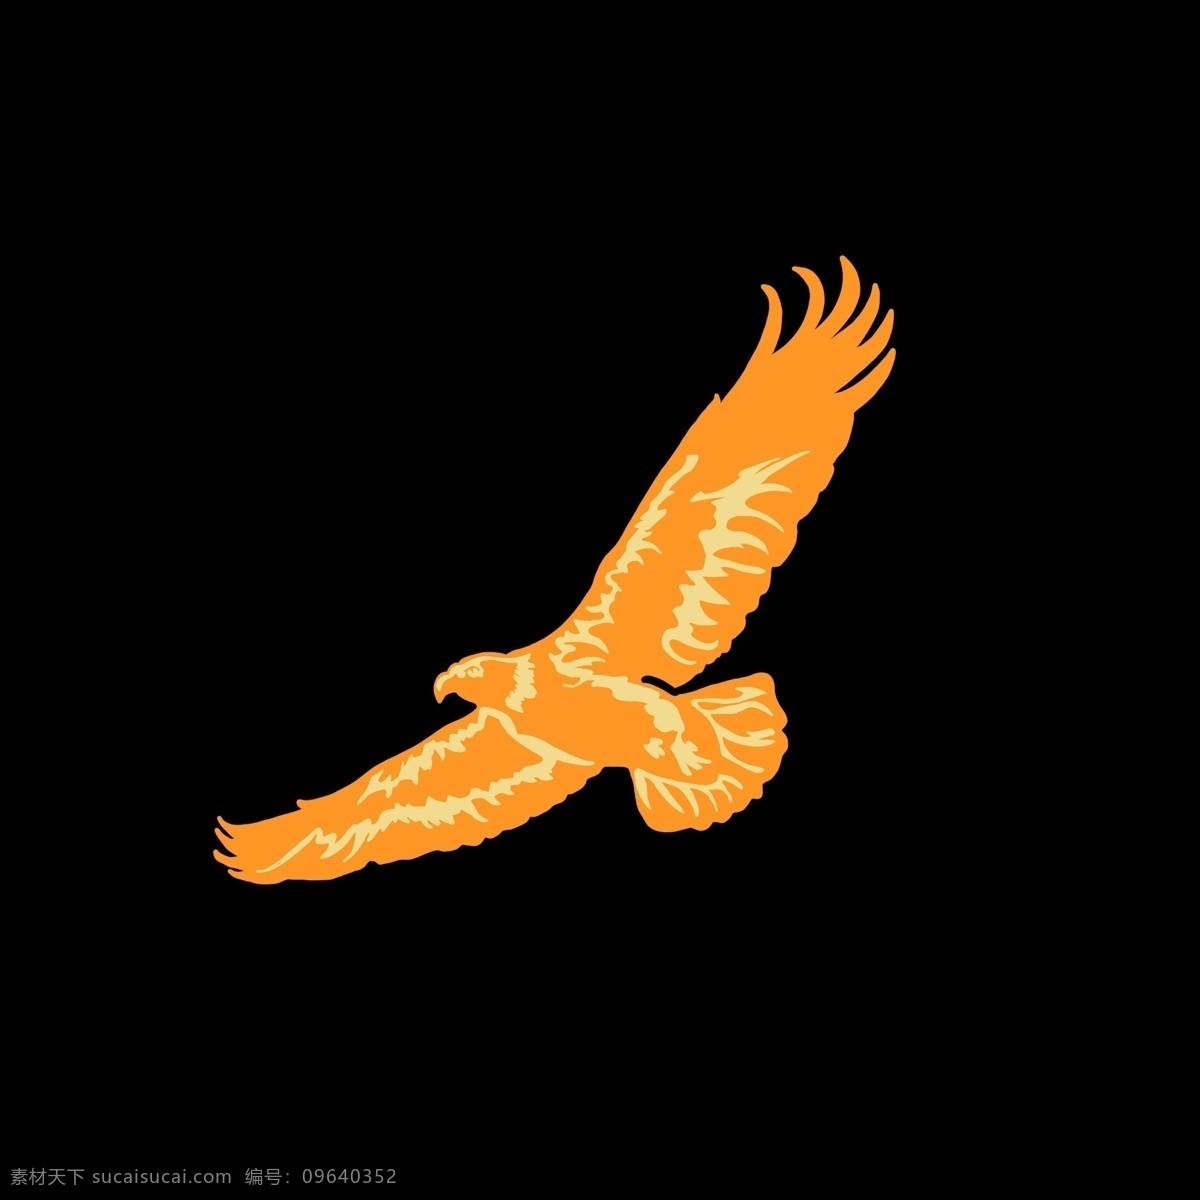 黄色老鹰剪影 黄色 色块 老鹰 翱翔 动物 飞行动物 卡通 简洁 简单 节约 线条 天空中飞翔 灵敏